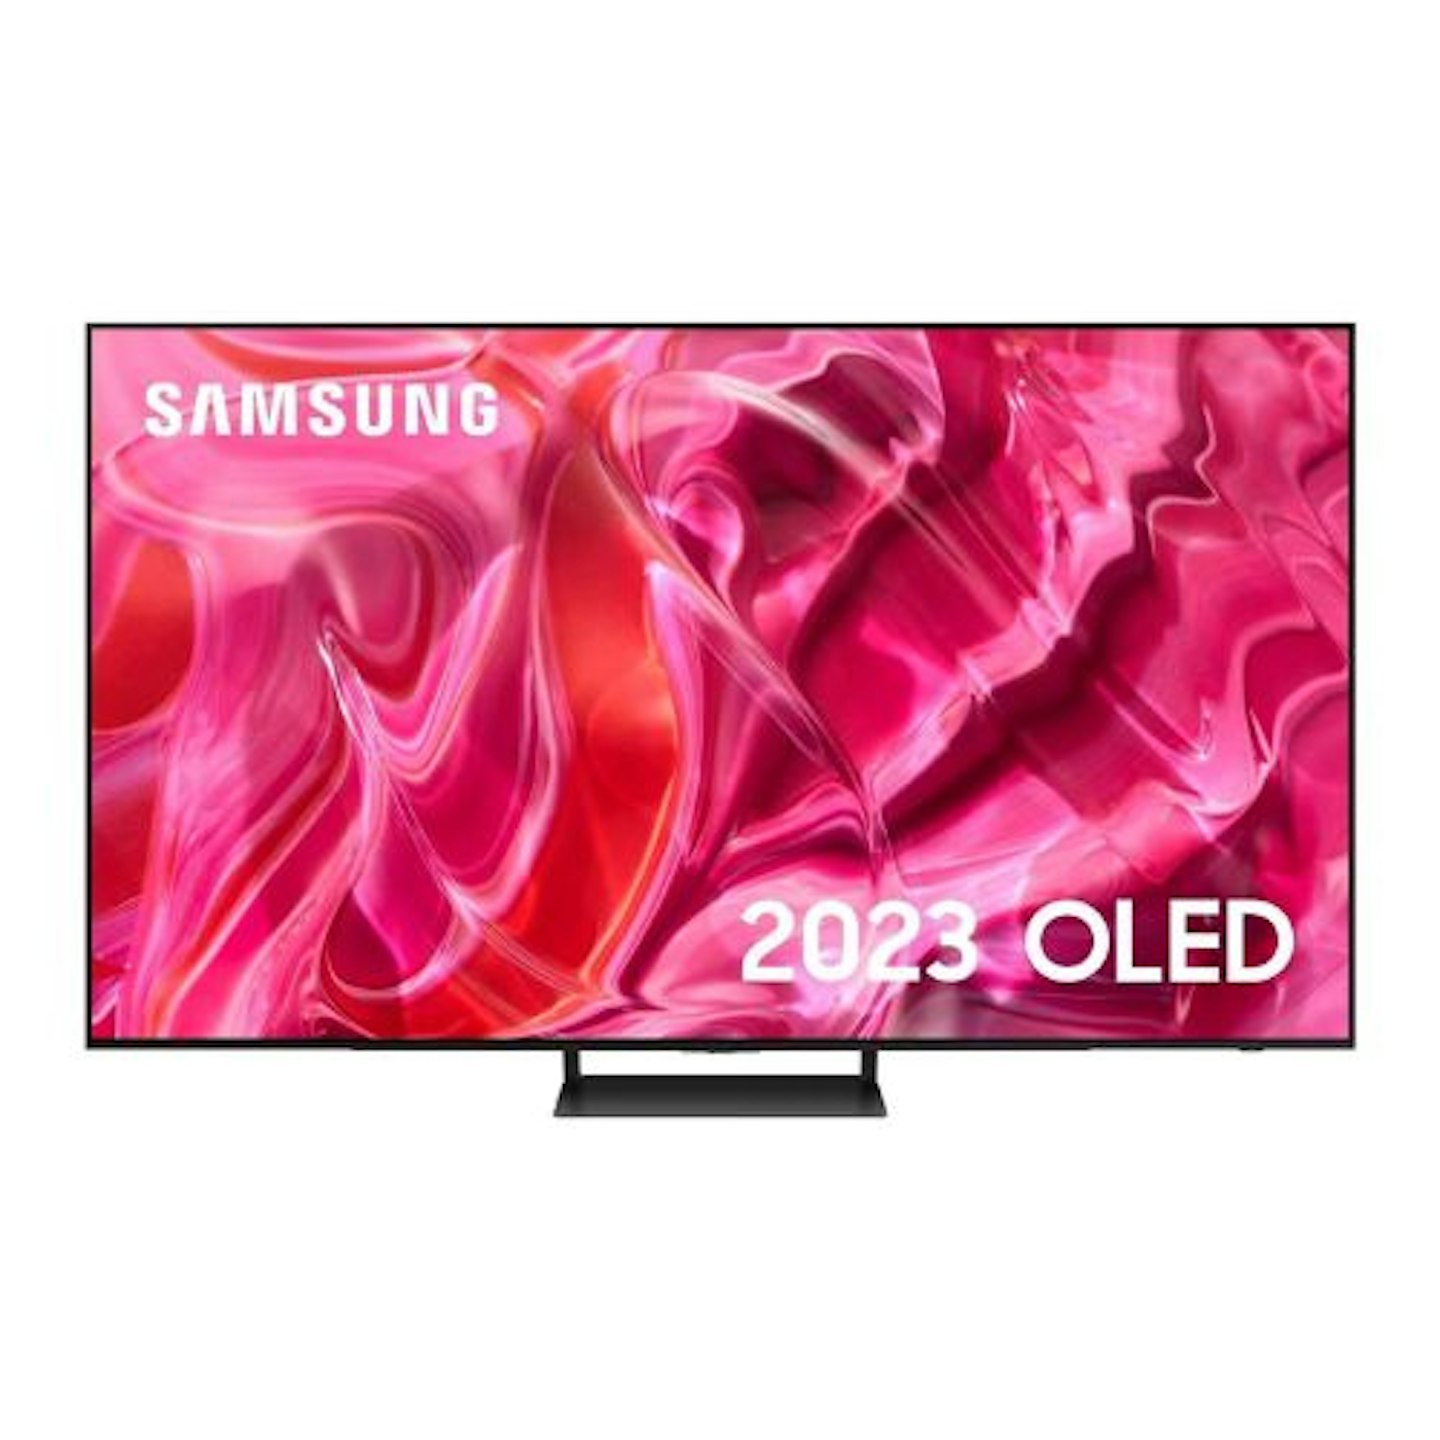 samsung S90 77 inch OLED 4K HDR Smart TV